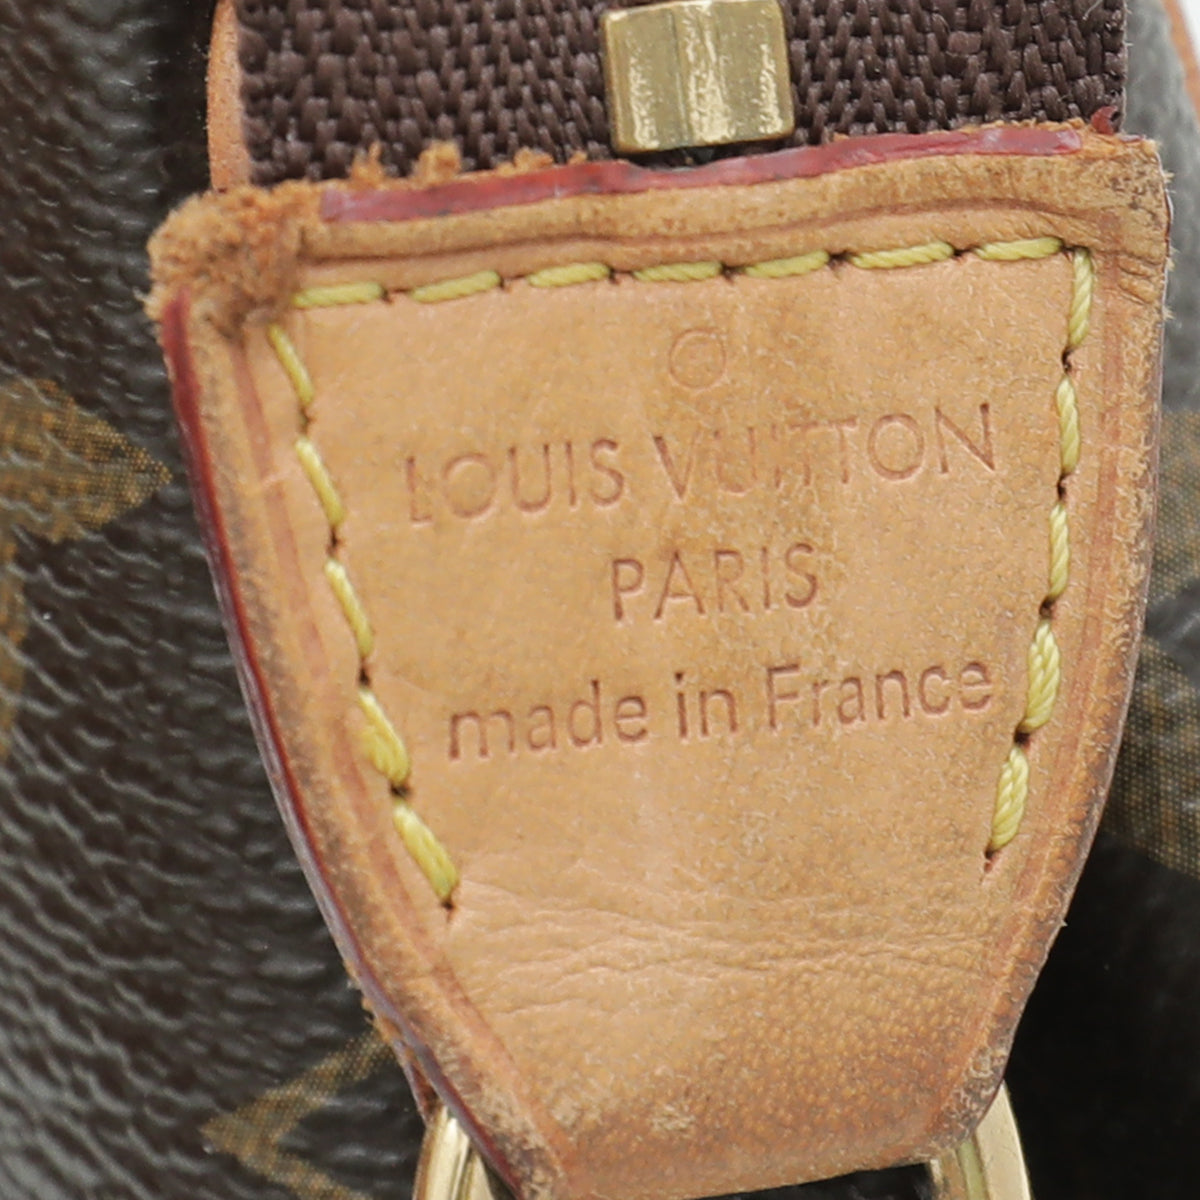 Eva cloth handbag Louis Vuitton Brown in Cloth - 34512827